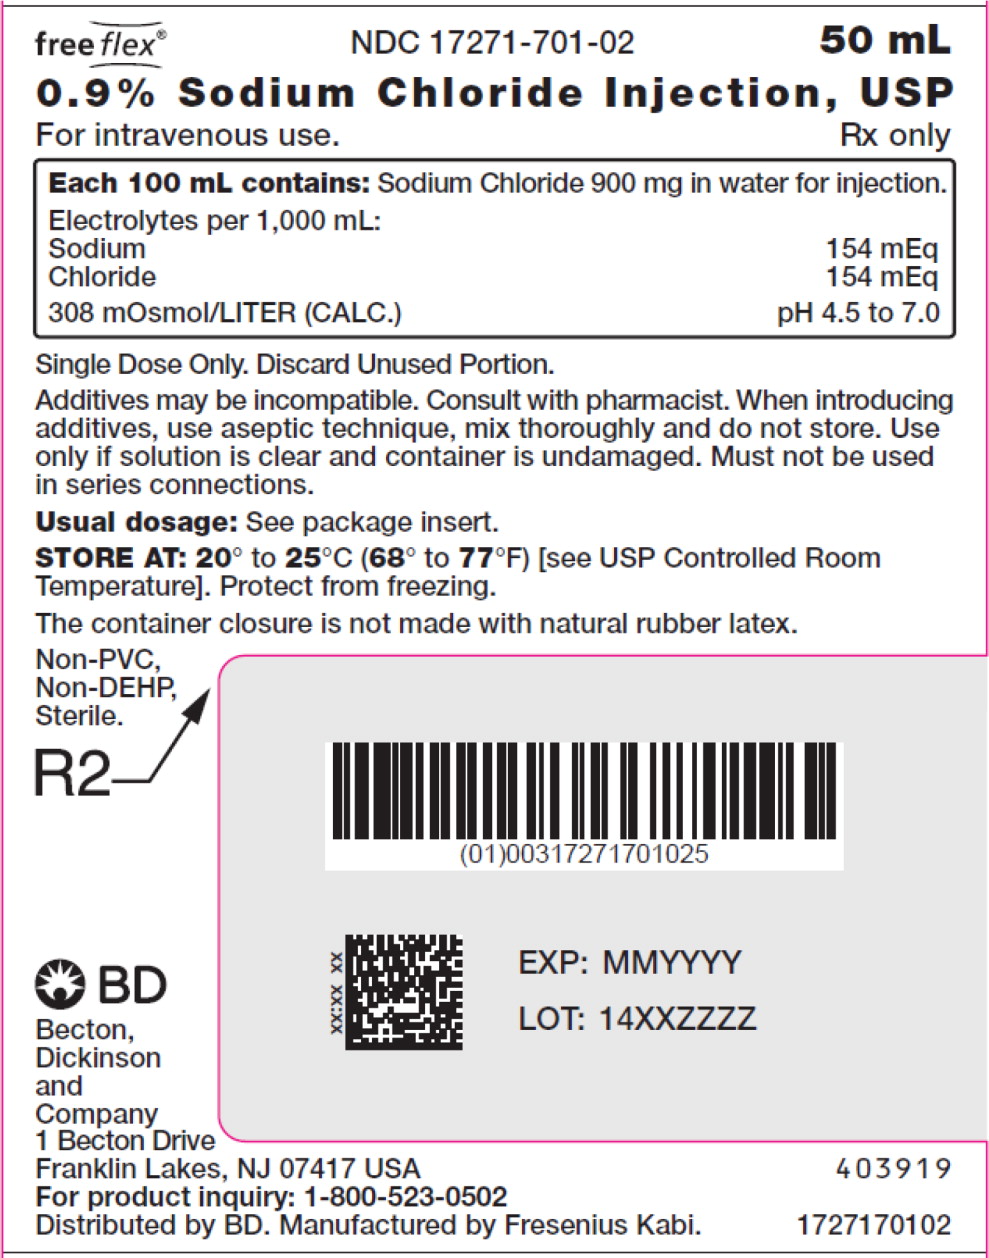 PACKAGE LABEL – PRINCIPAL DISPLAY PANEL – Sodium Chloride 50 mL Bag Label
